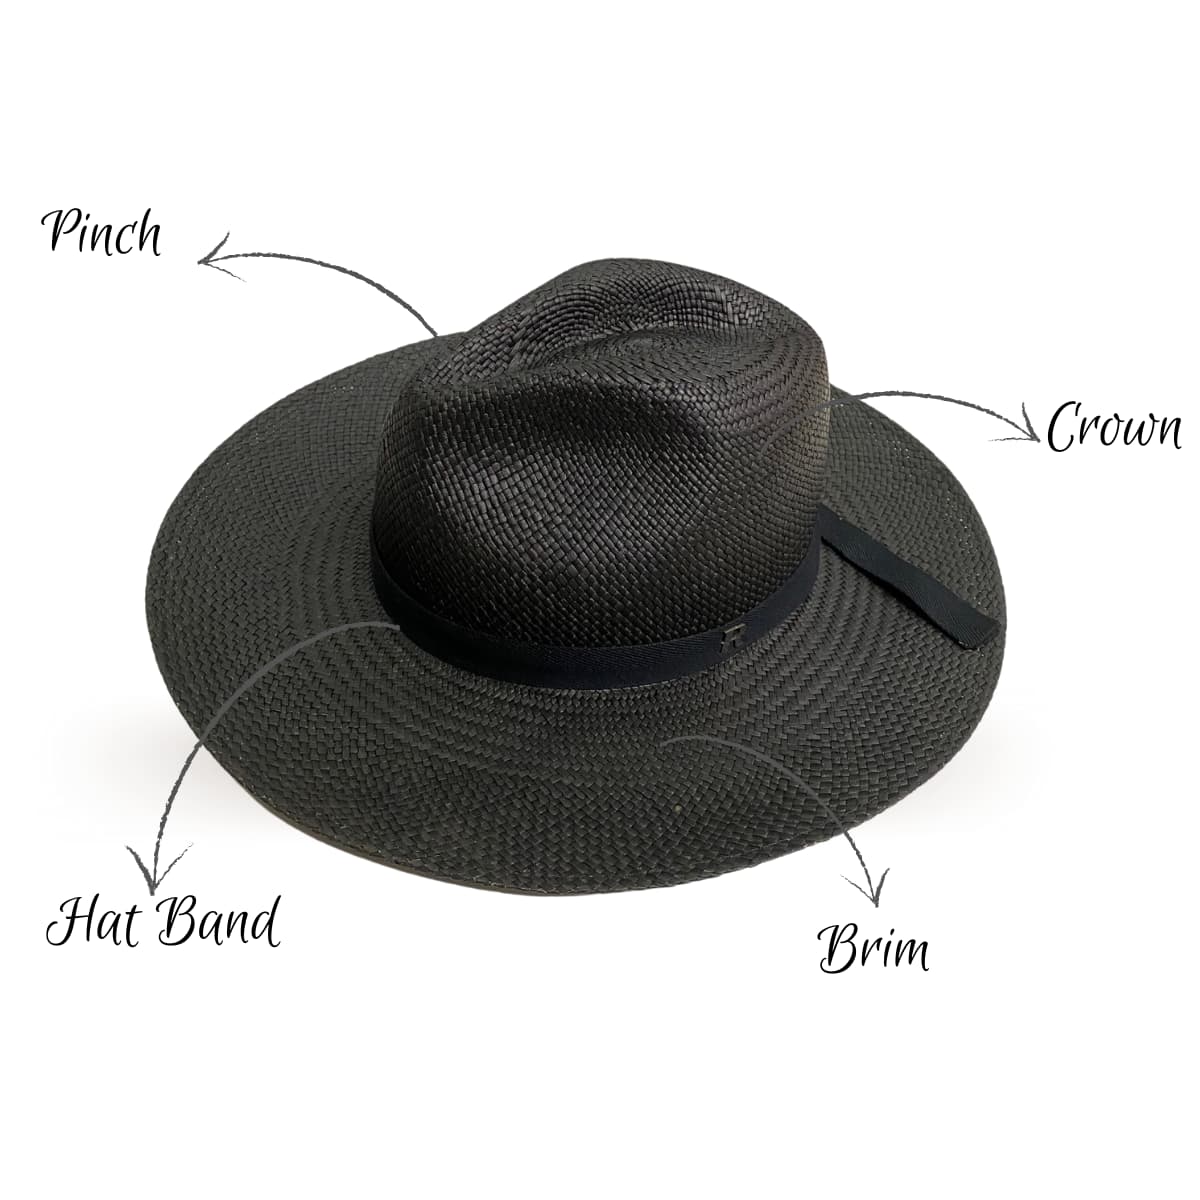 Paros Panama Hat Black for Women